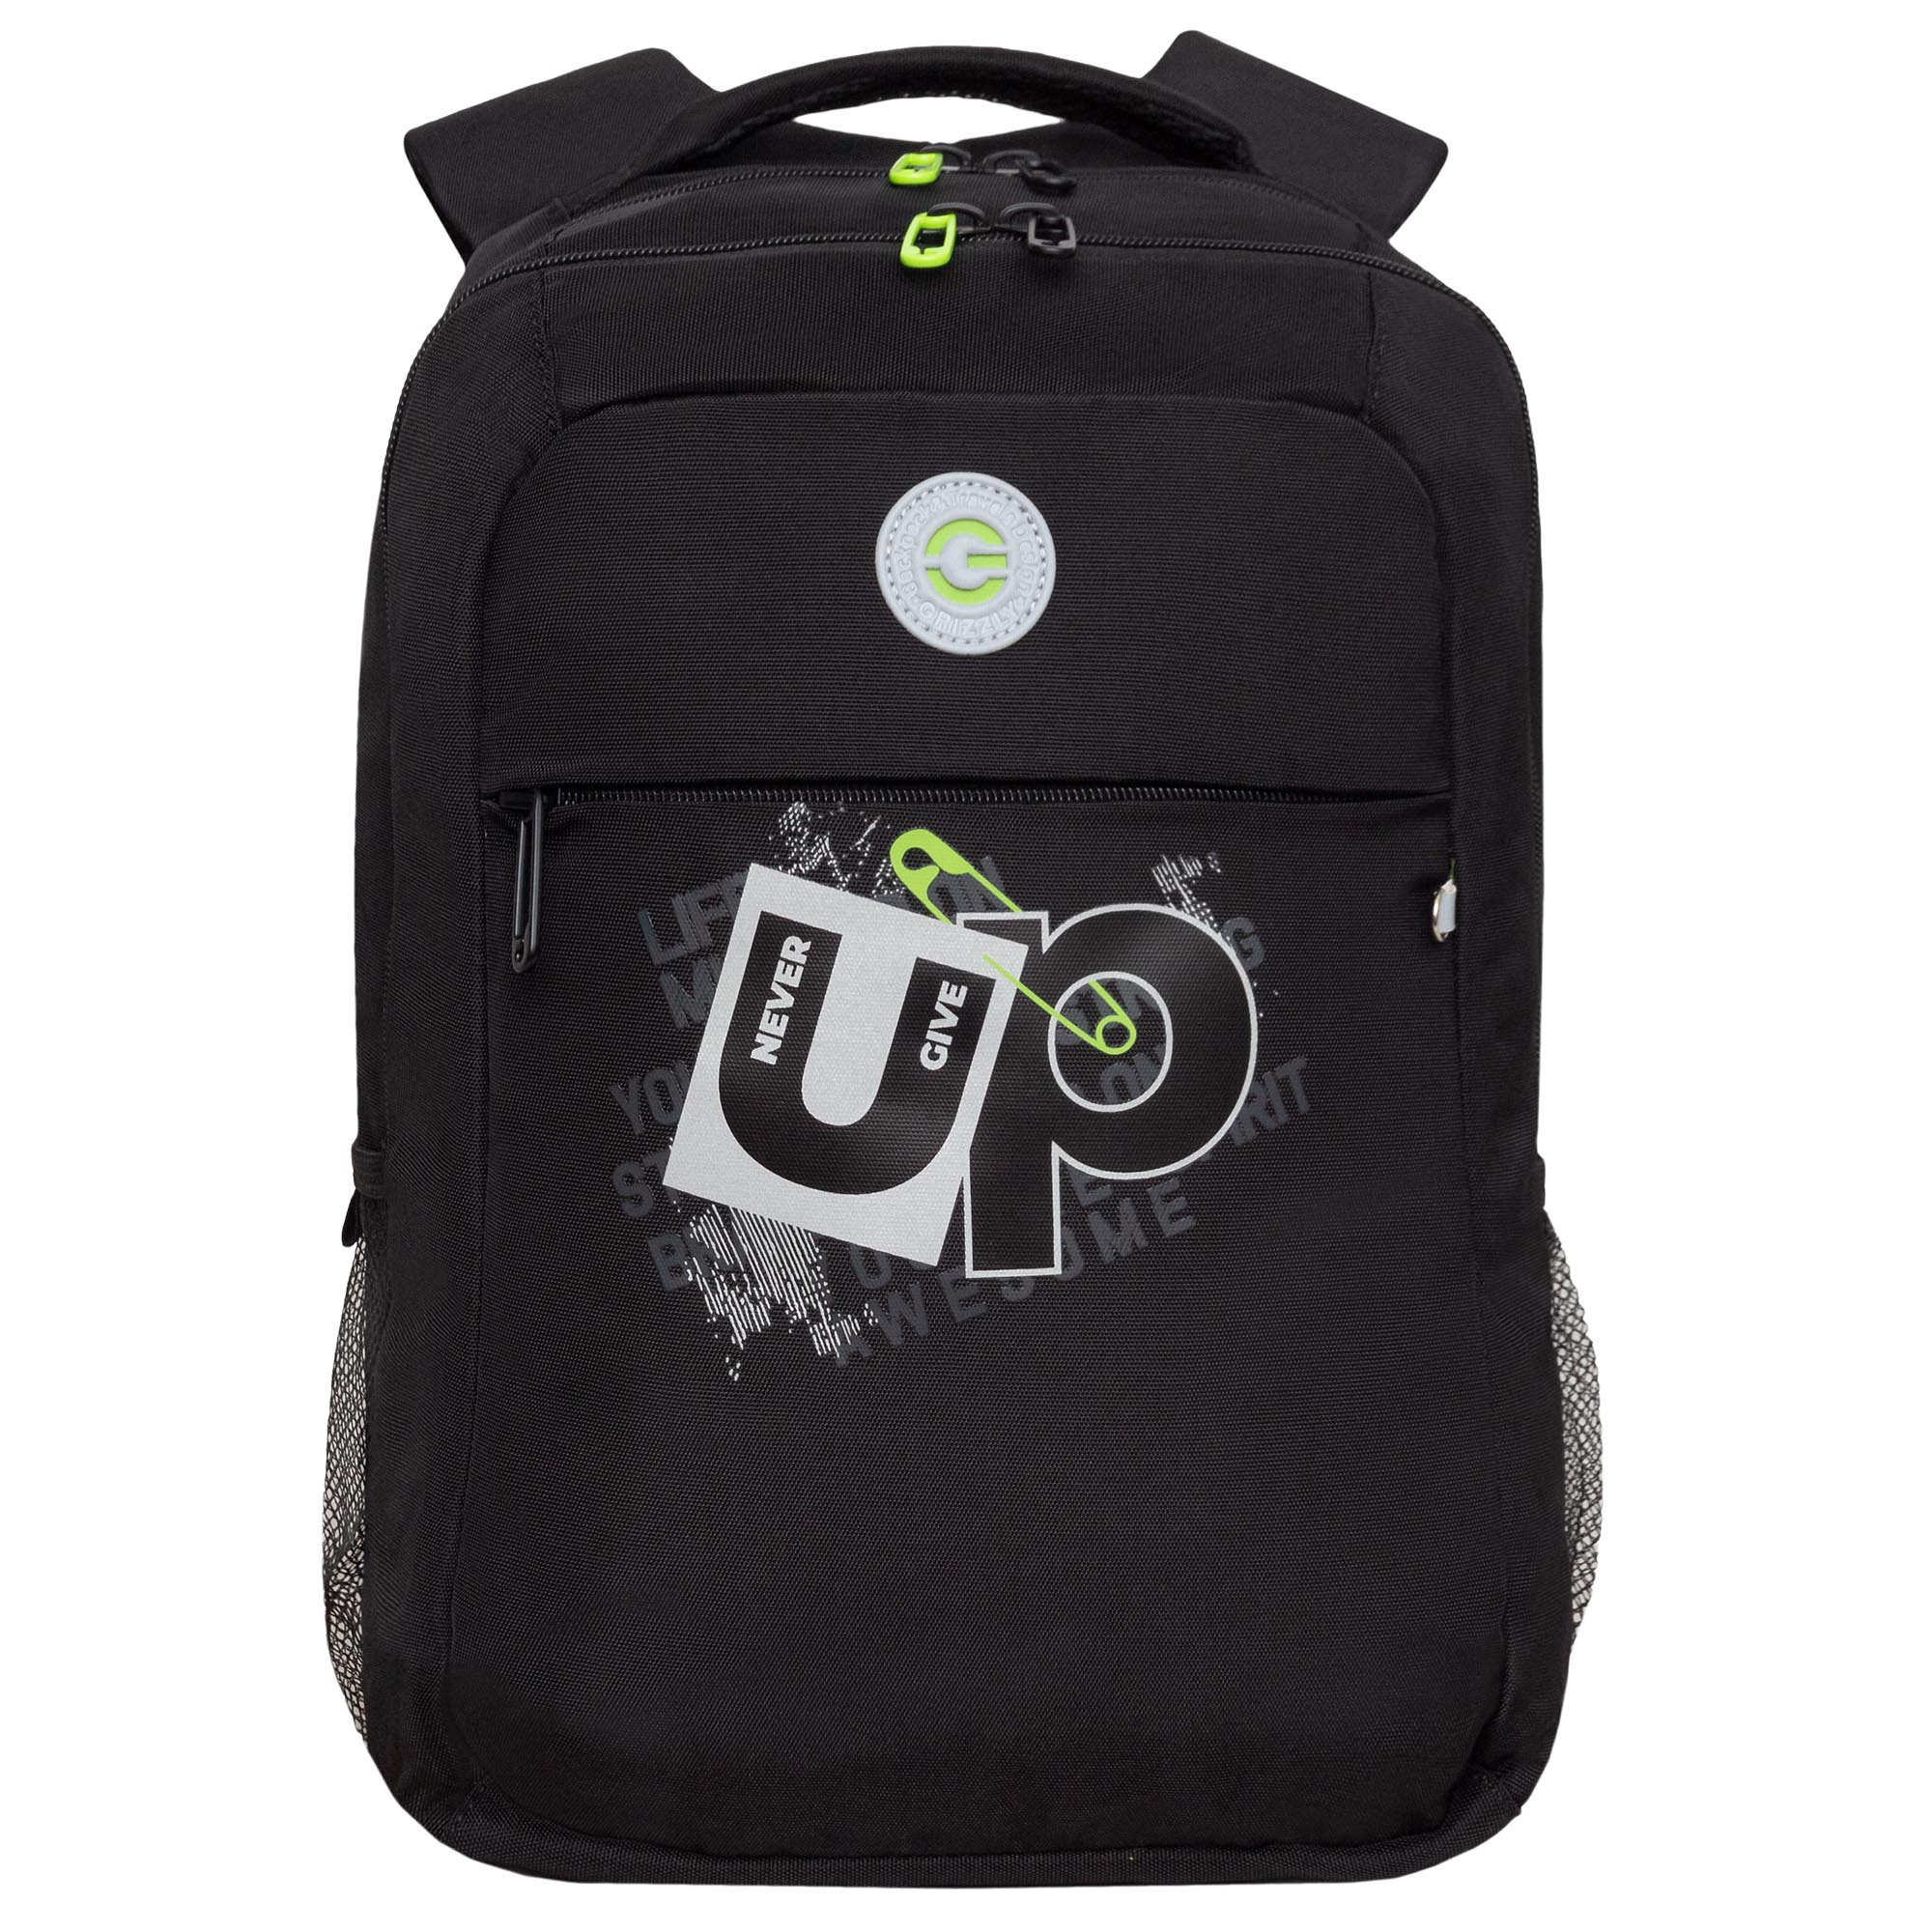 Рюкзак молодежный GRIZZLY с карманом для ноутбука 13, для мальчика, RB-456-3 1 рюкзак для ноутбука razer concourse pro 17 3 rc81 02920101 0500